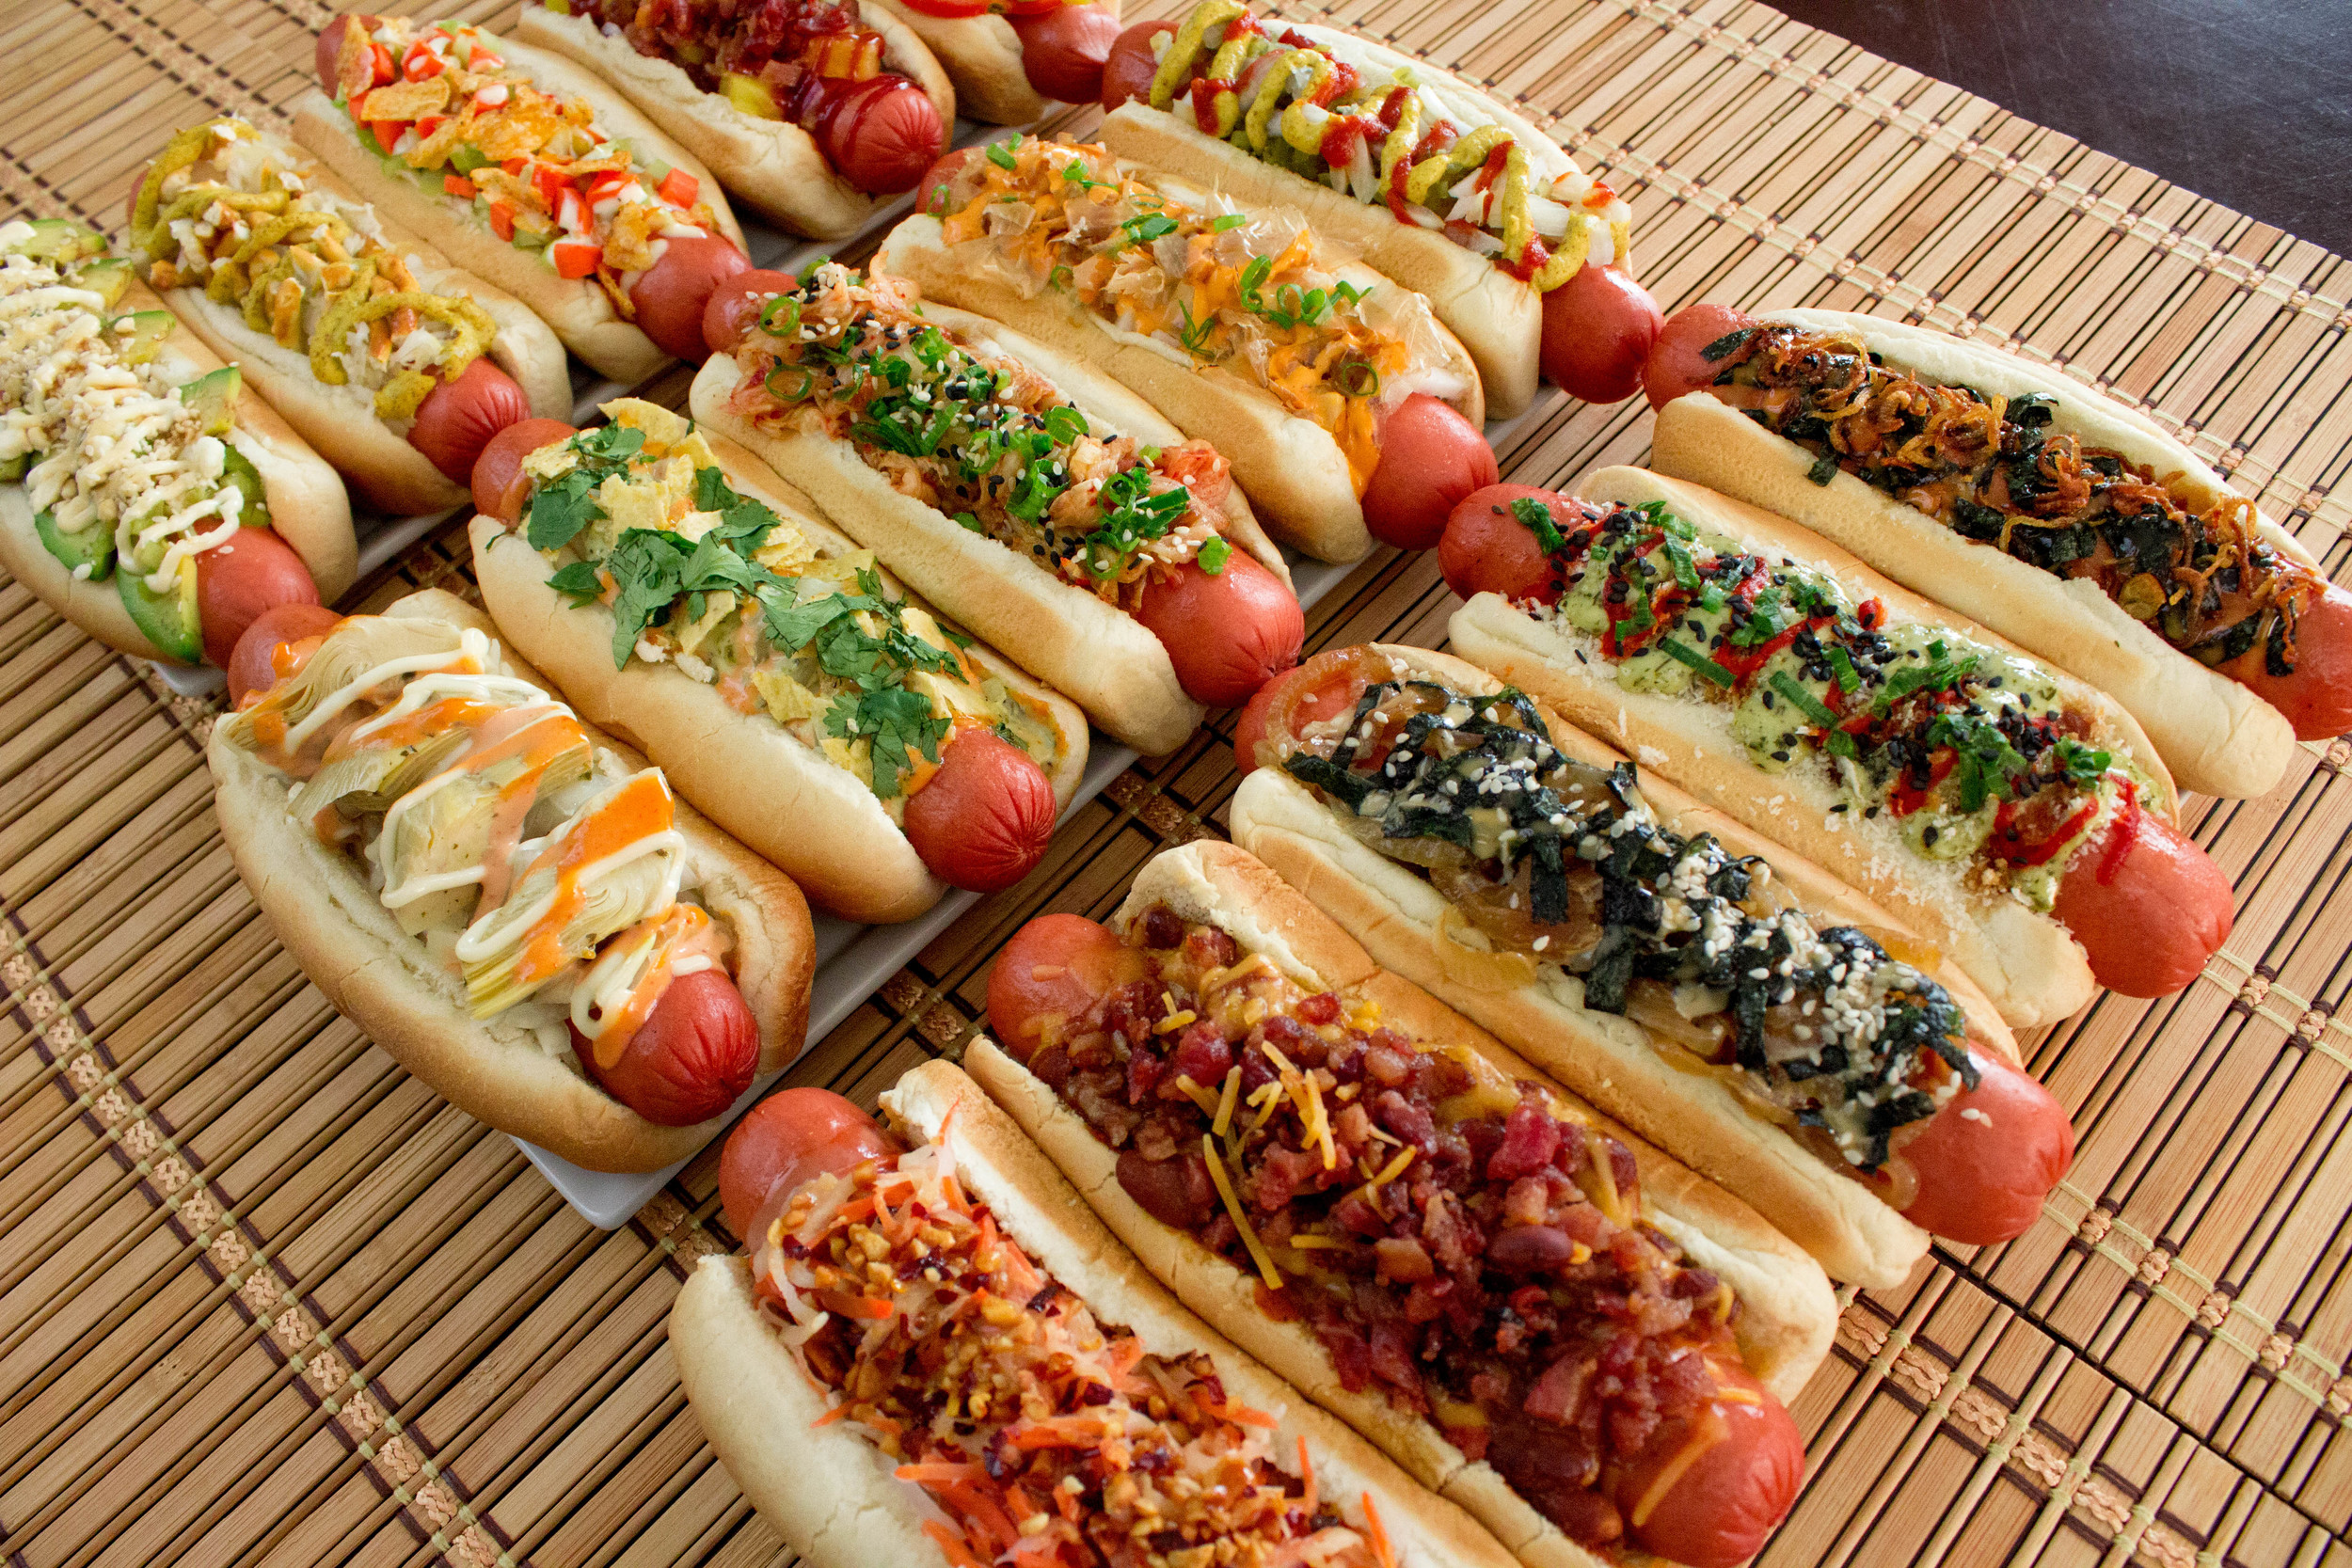 Franchise Umai Savory Hot Dogs